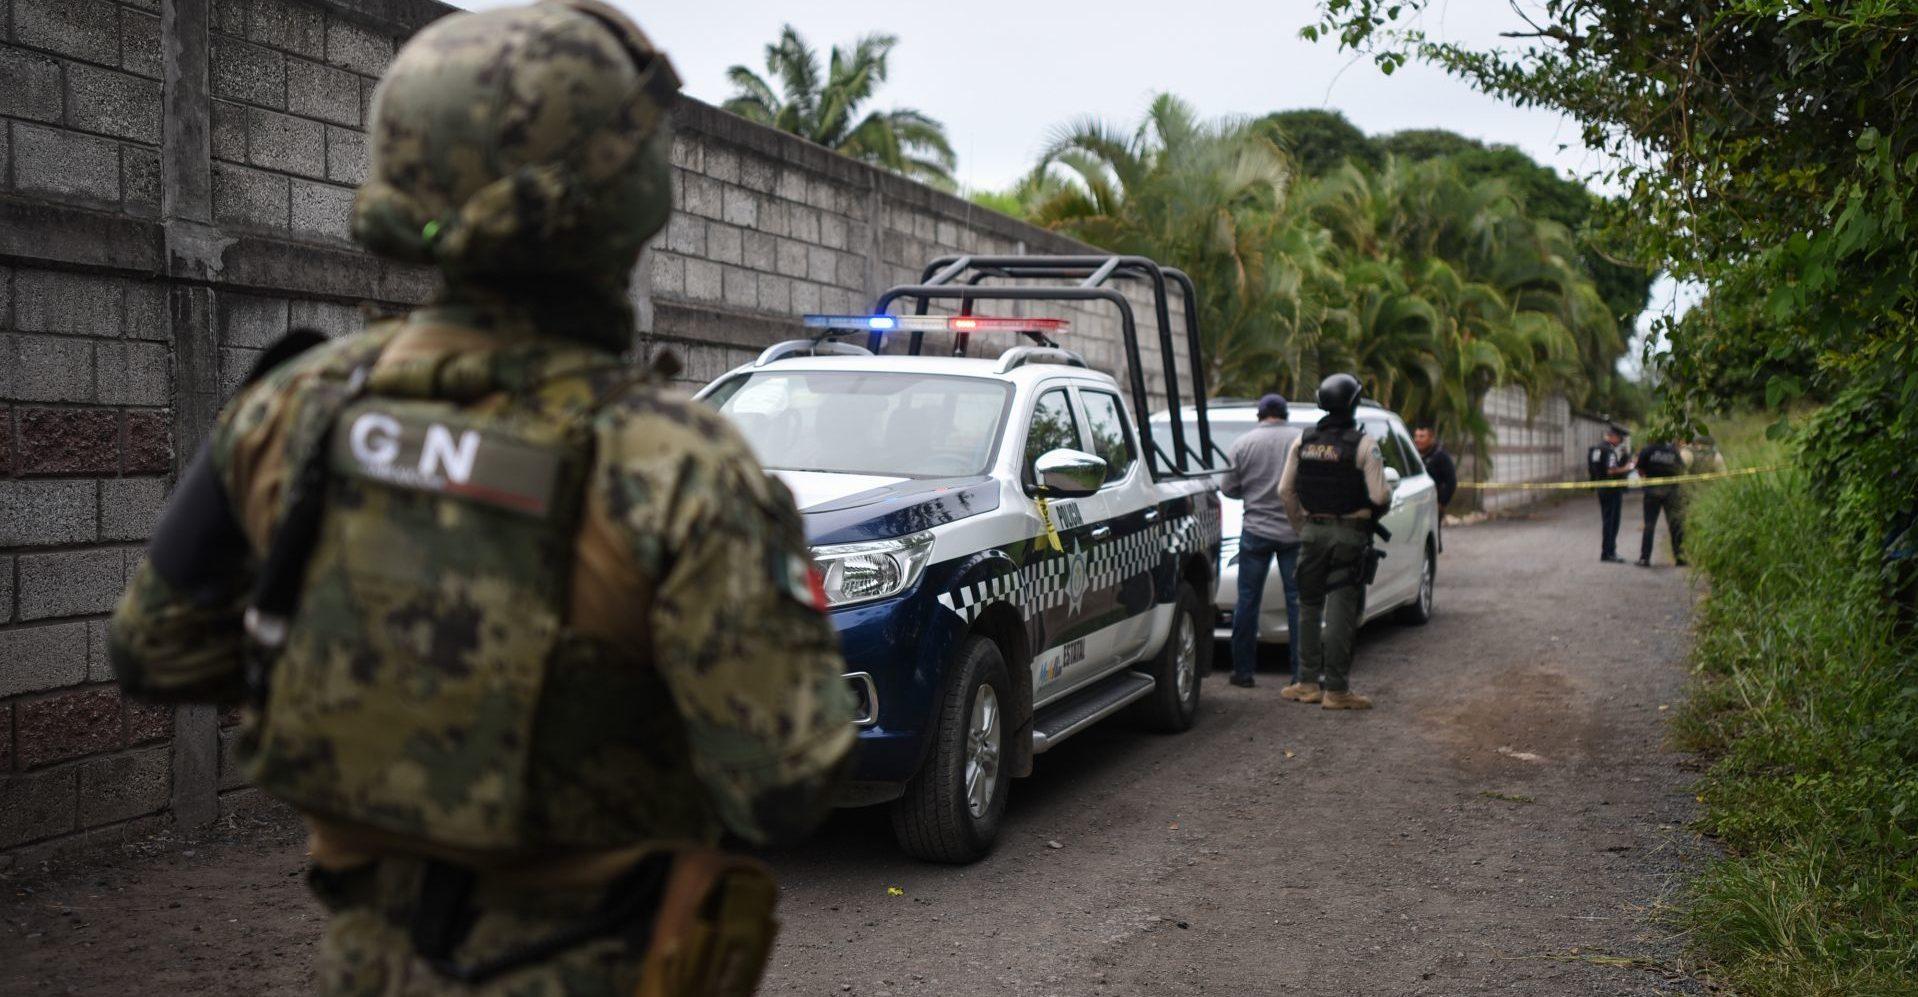 Familia es asesinada en Veracruz, presumen venganza por nexo con exguerrillero